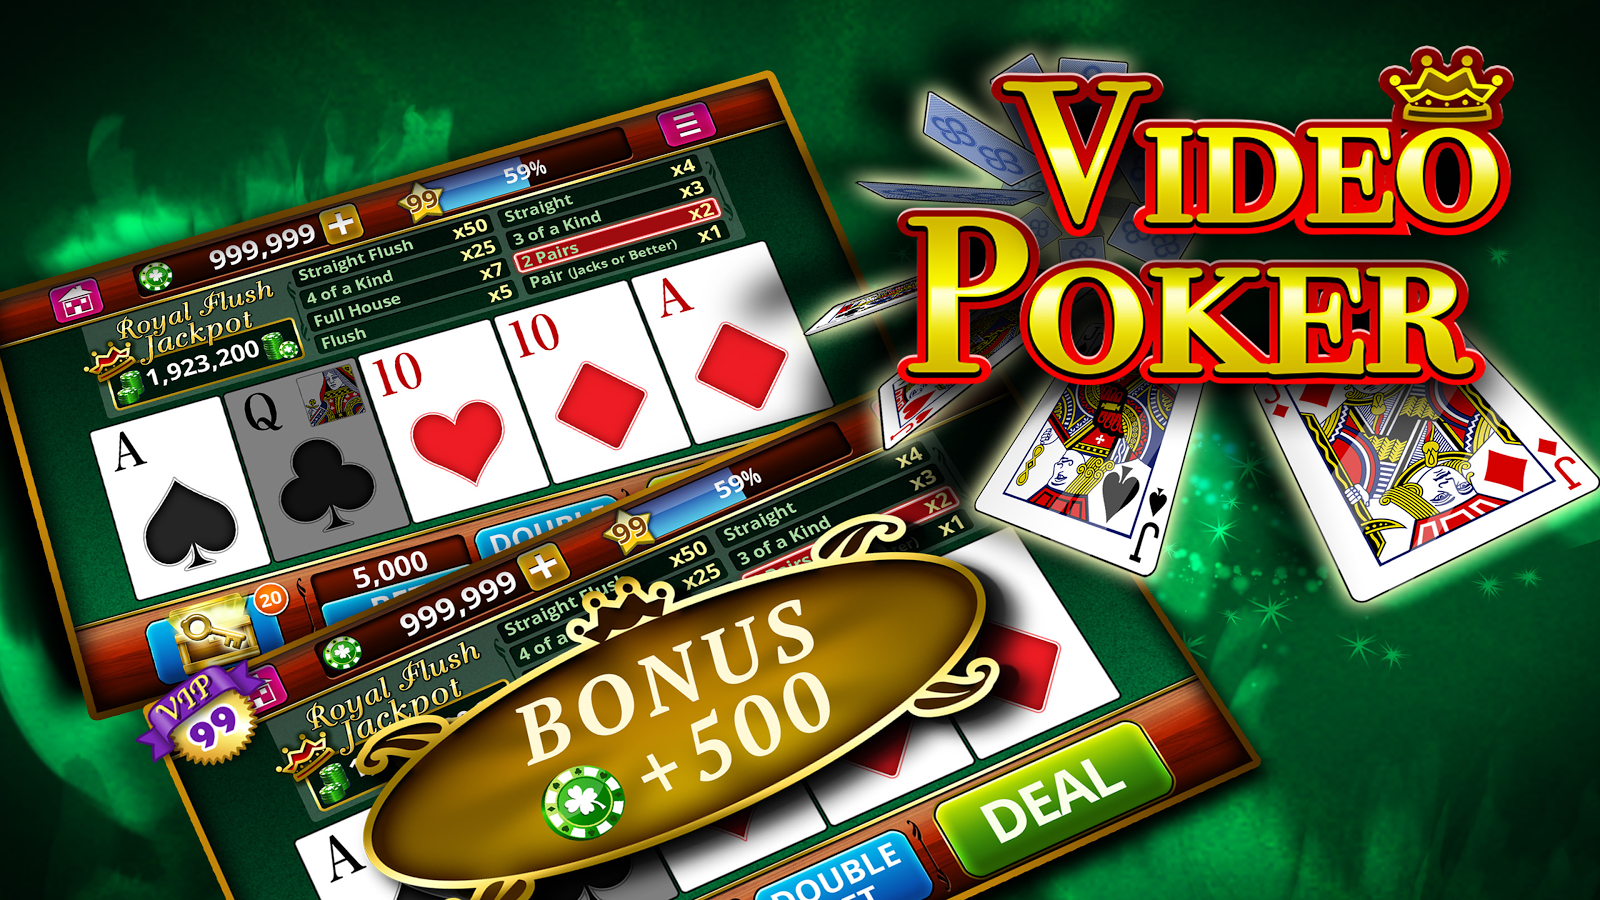 Покер автомат онлайн бесплатно играть в пьяницу в карты бесплатно онлайн играть